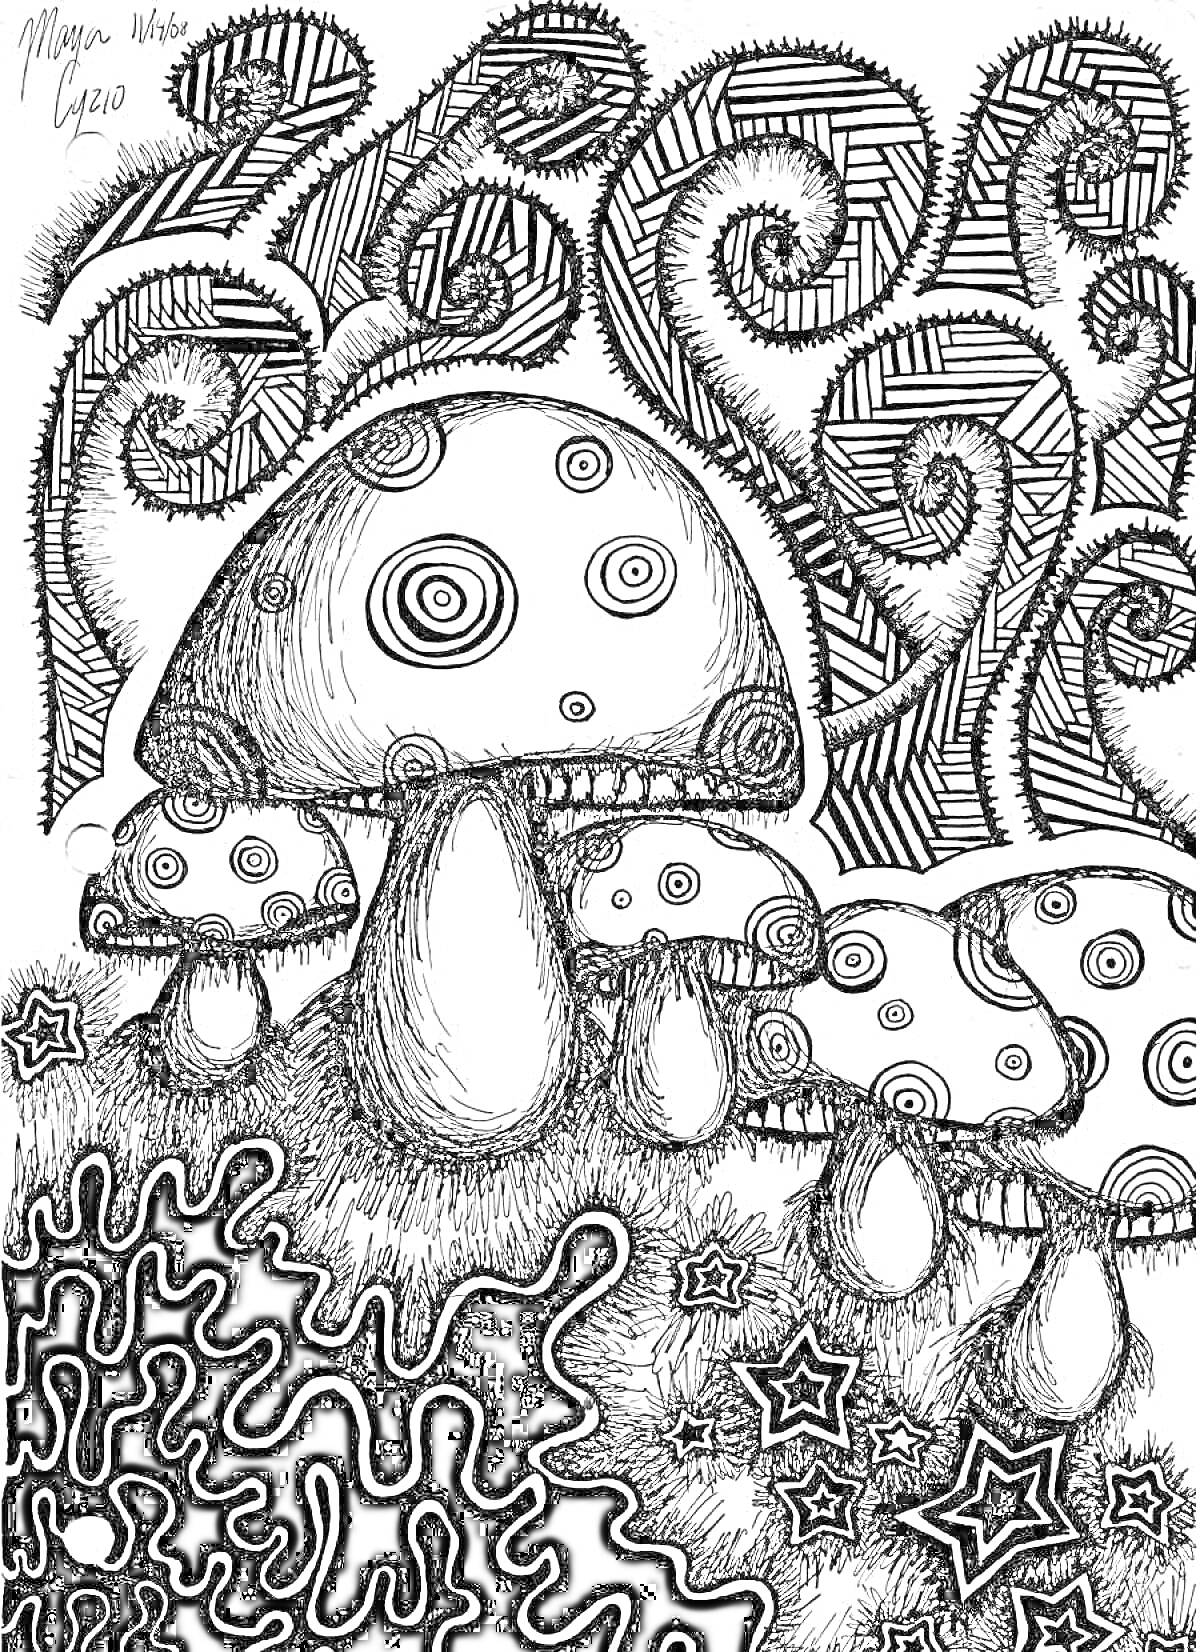 Психоделические грибы на фоне абстрактных узоров и звезд